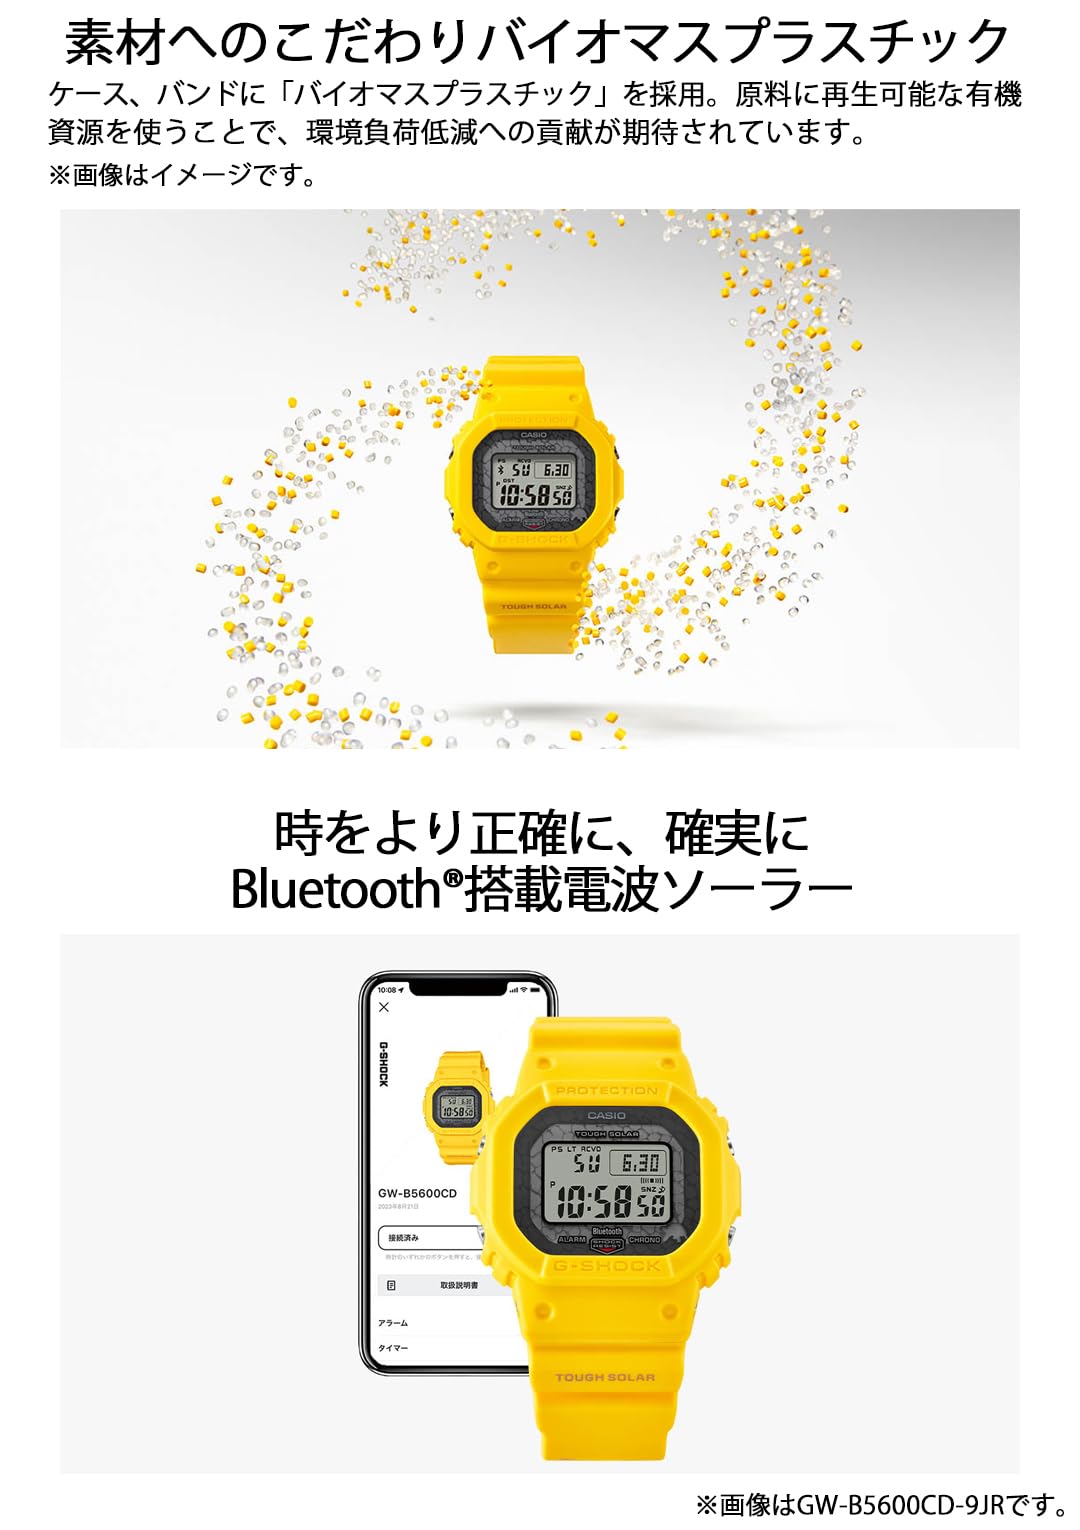 ジーショック [カシオ] 腕時計 【国内正規品】チャールズ・ダーウィン財団コラボレーションモデル Bluetooth搭載 バイオマスプラスチック採用 GW-B5600CD-9JR メンズ イエロー - BanzaiHobby